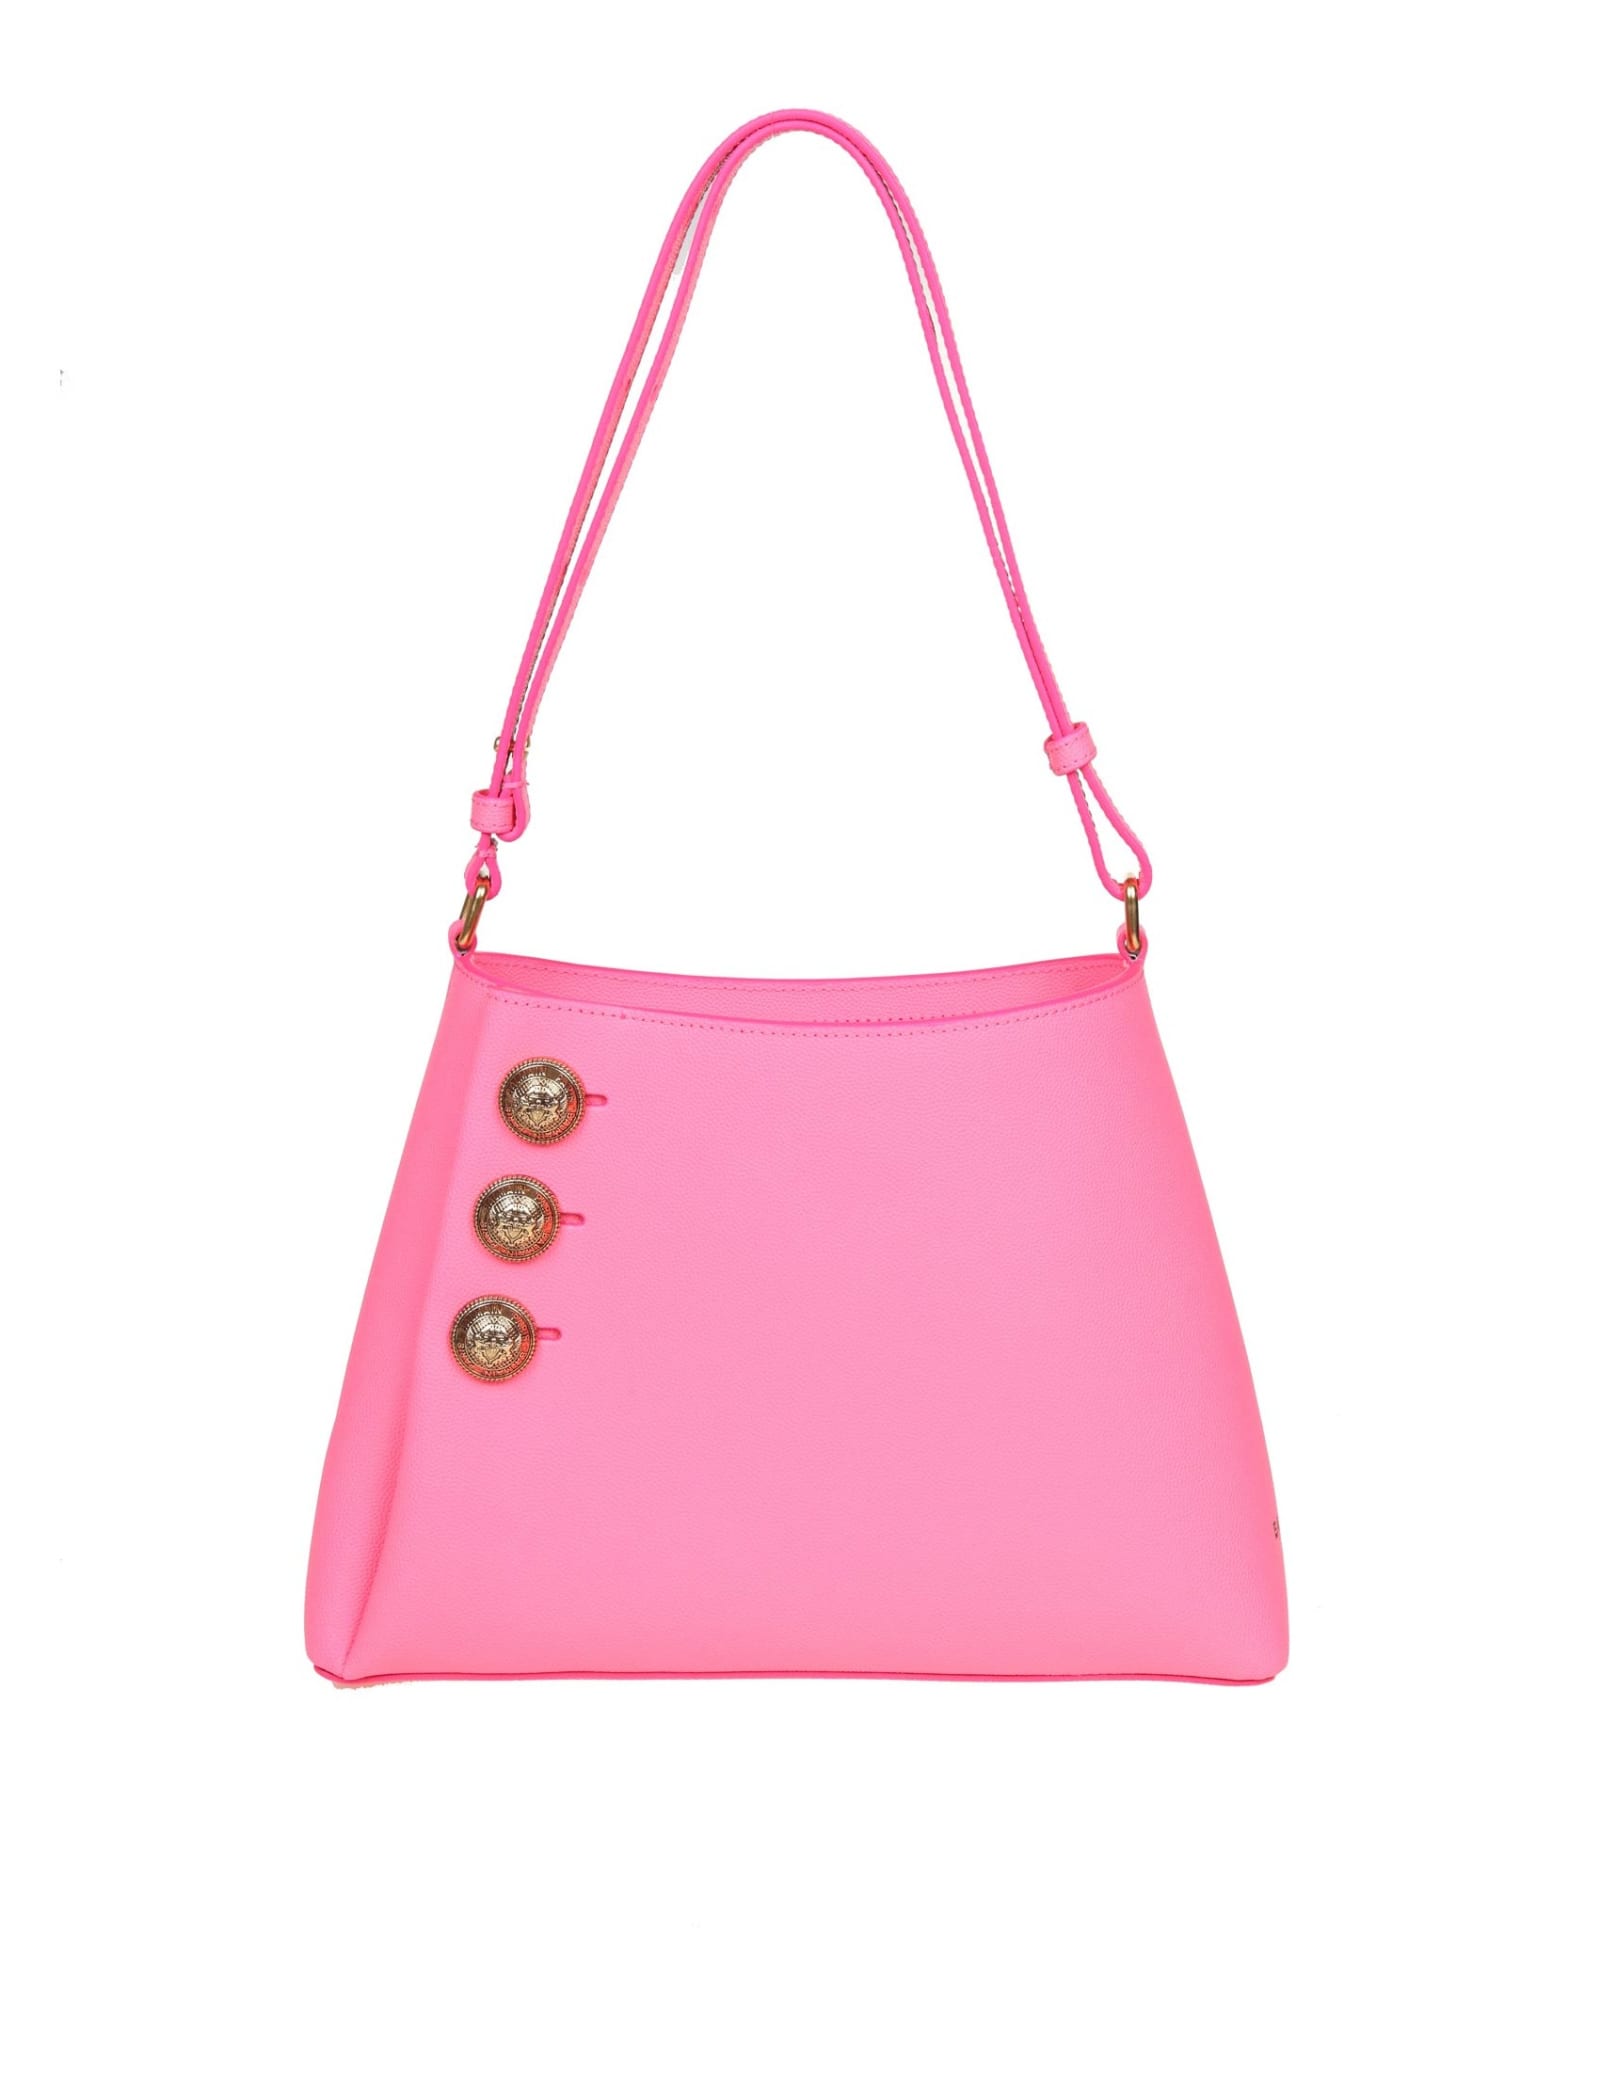 Balmain Emblem Shoulder Bag In Pink Leather In Bubblegum